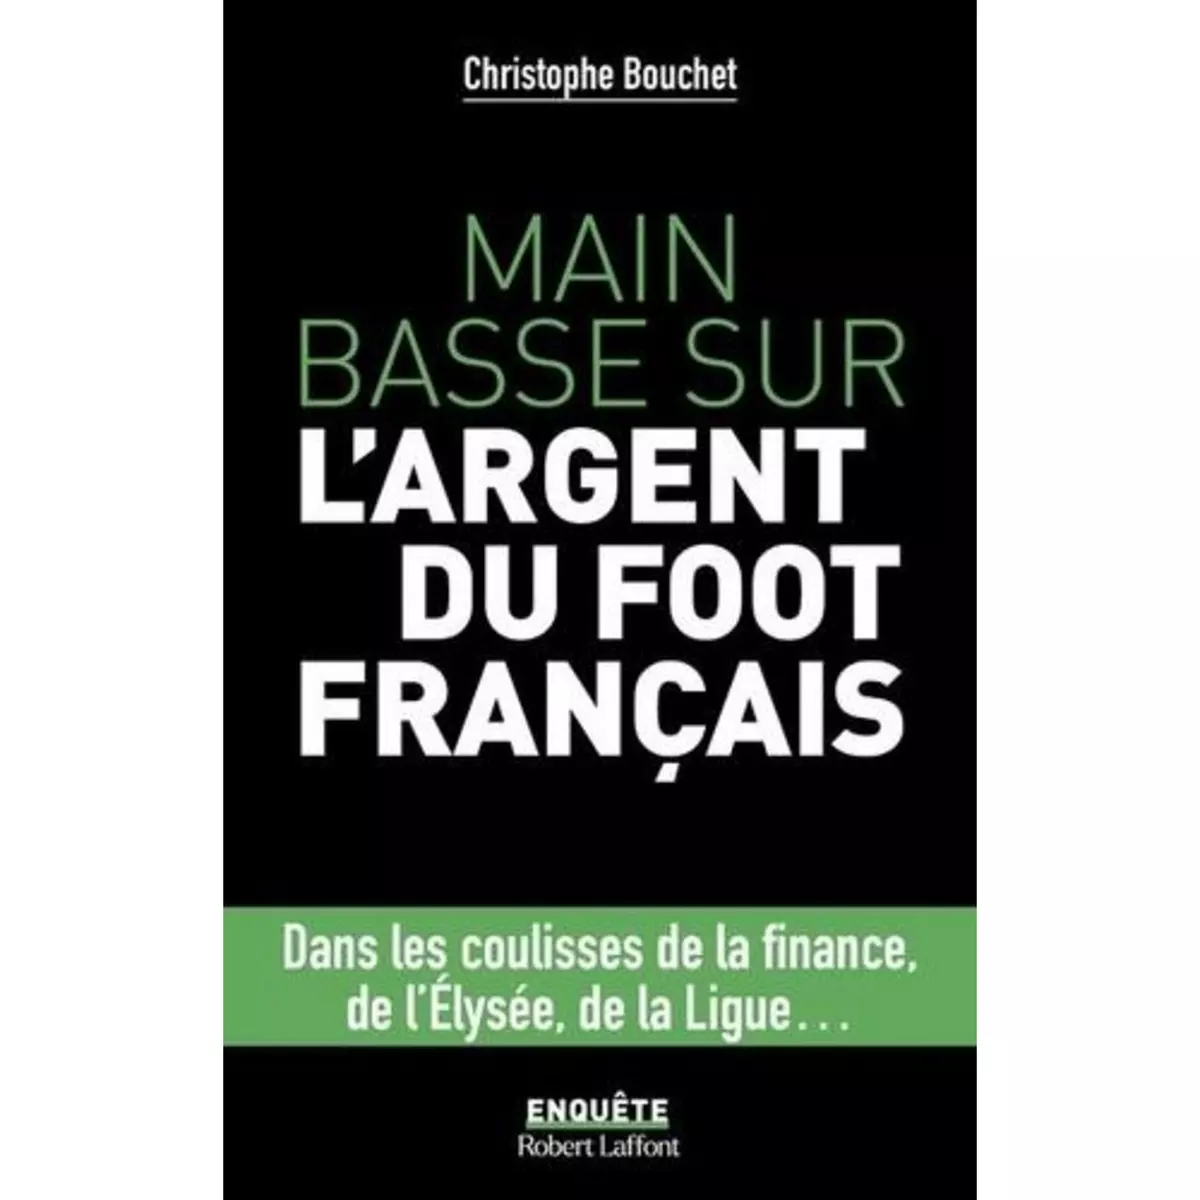  MAIN BASSE SUR L'ARGENT DU FOOT FRANCAIS, Bouchet Christophe